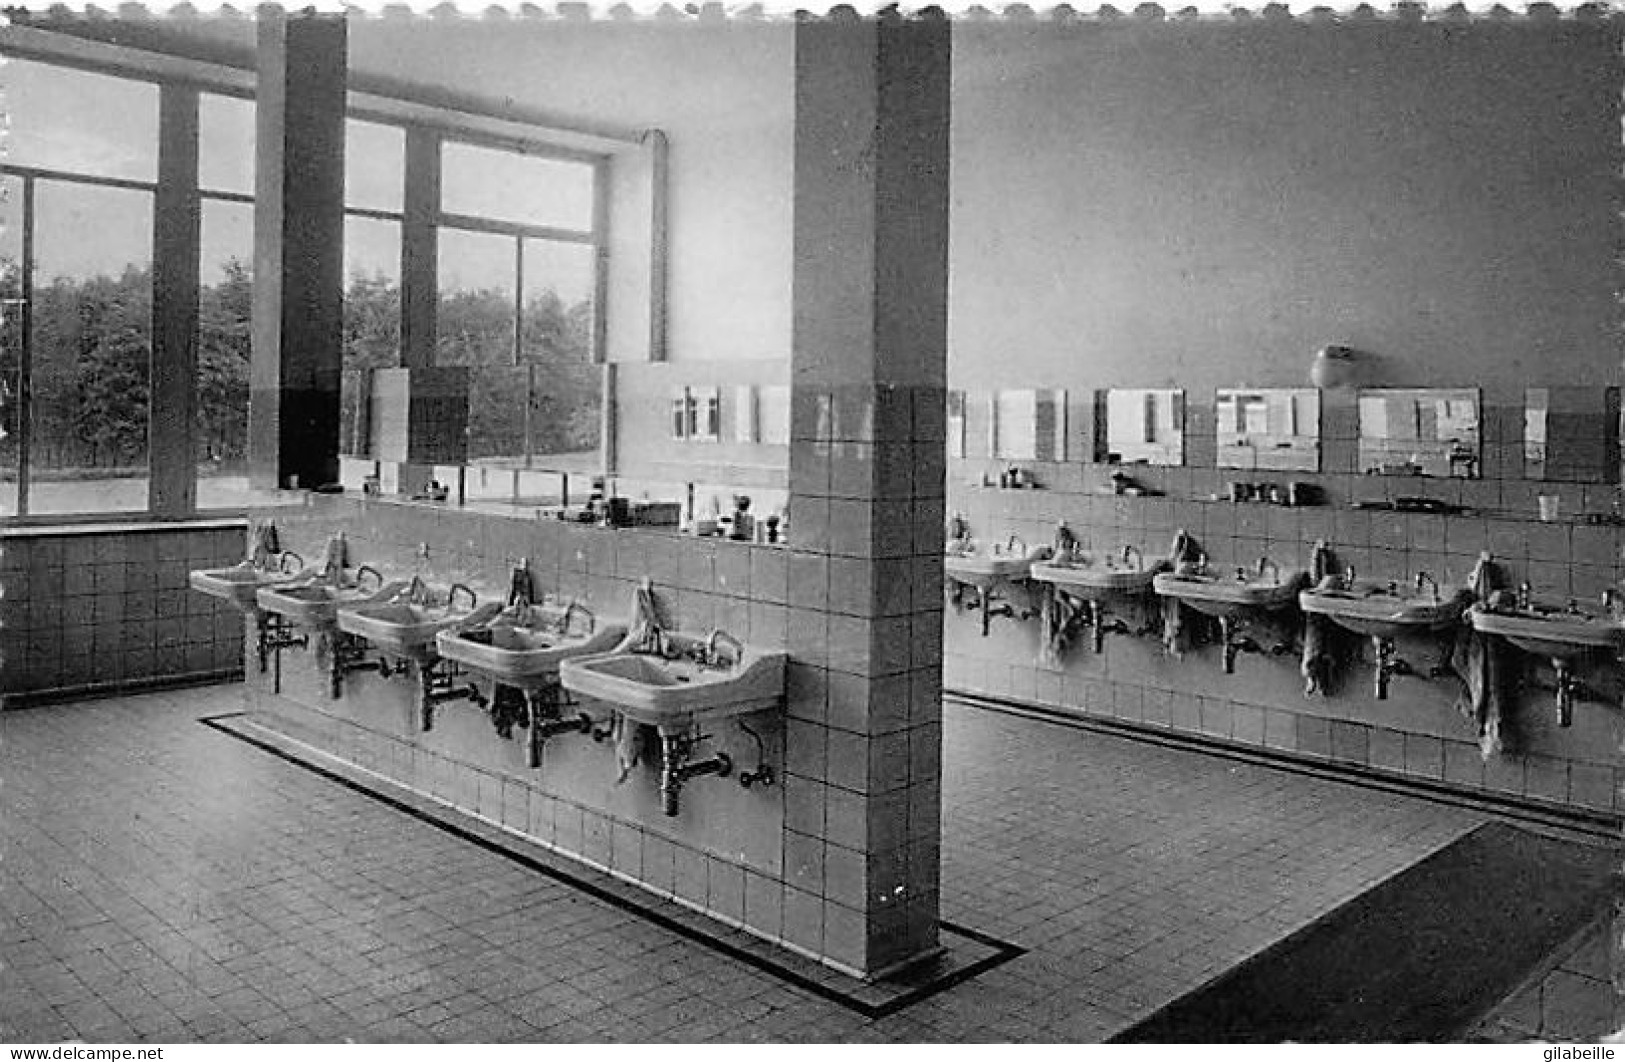 BRASSCHAAT - sanatorium " De Mick " - 10 zichtkaarten - lot 10 cartes